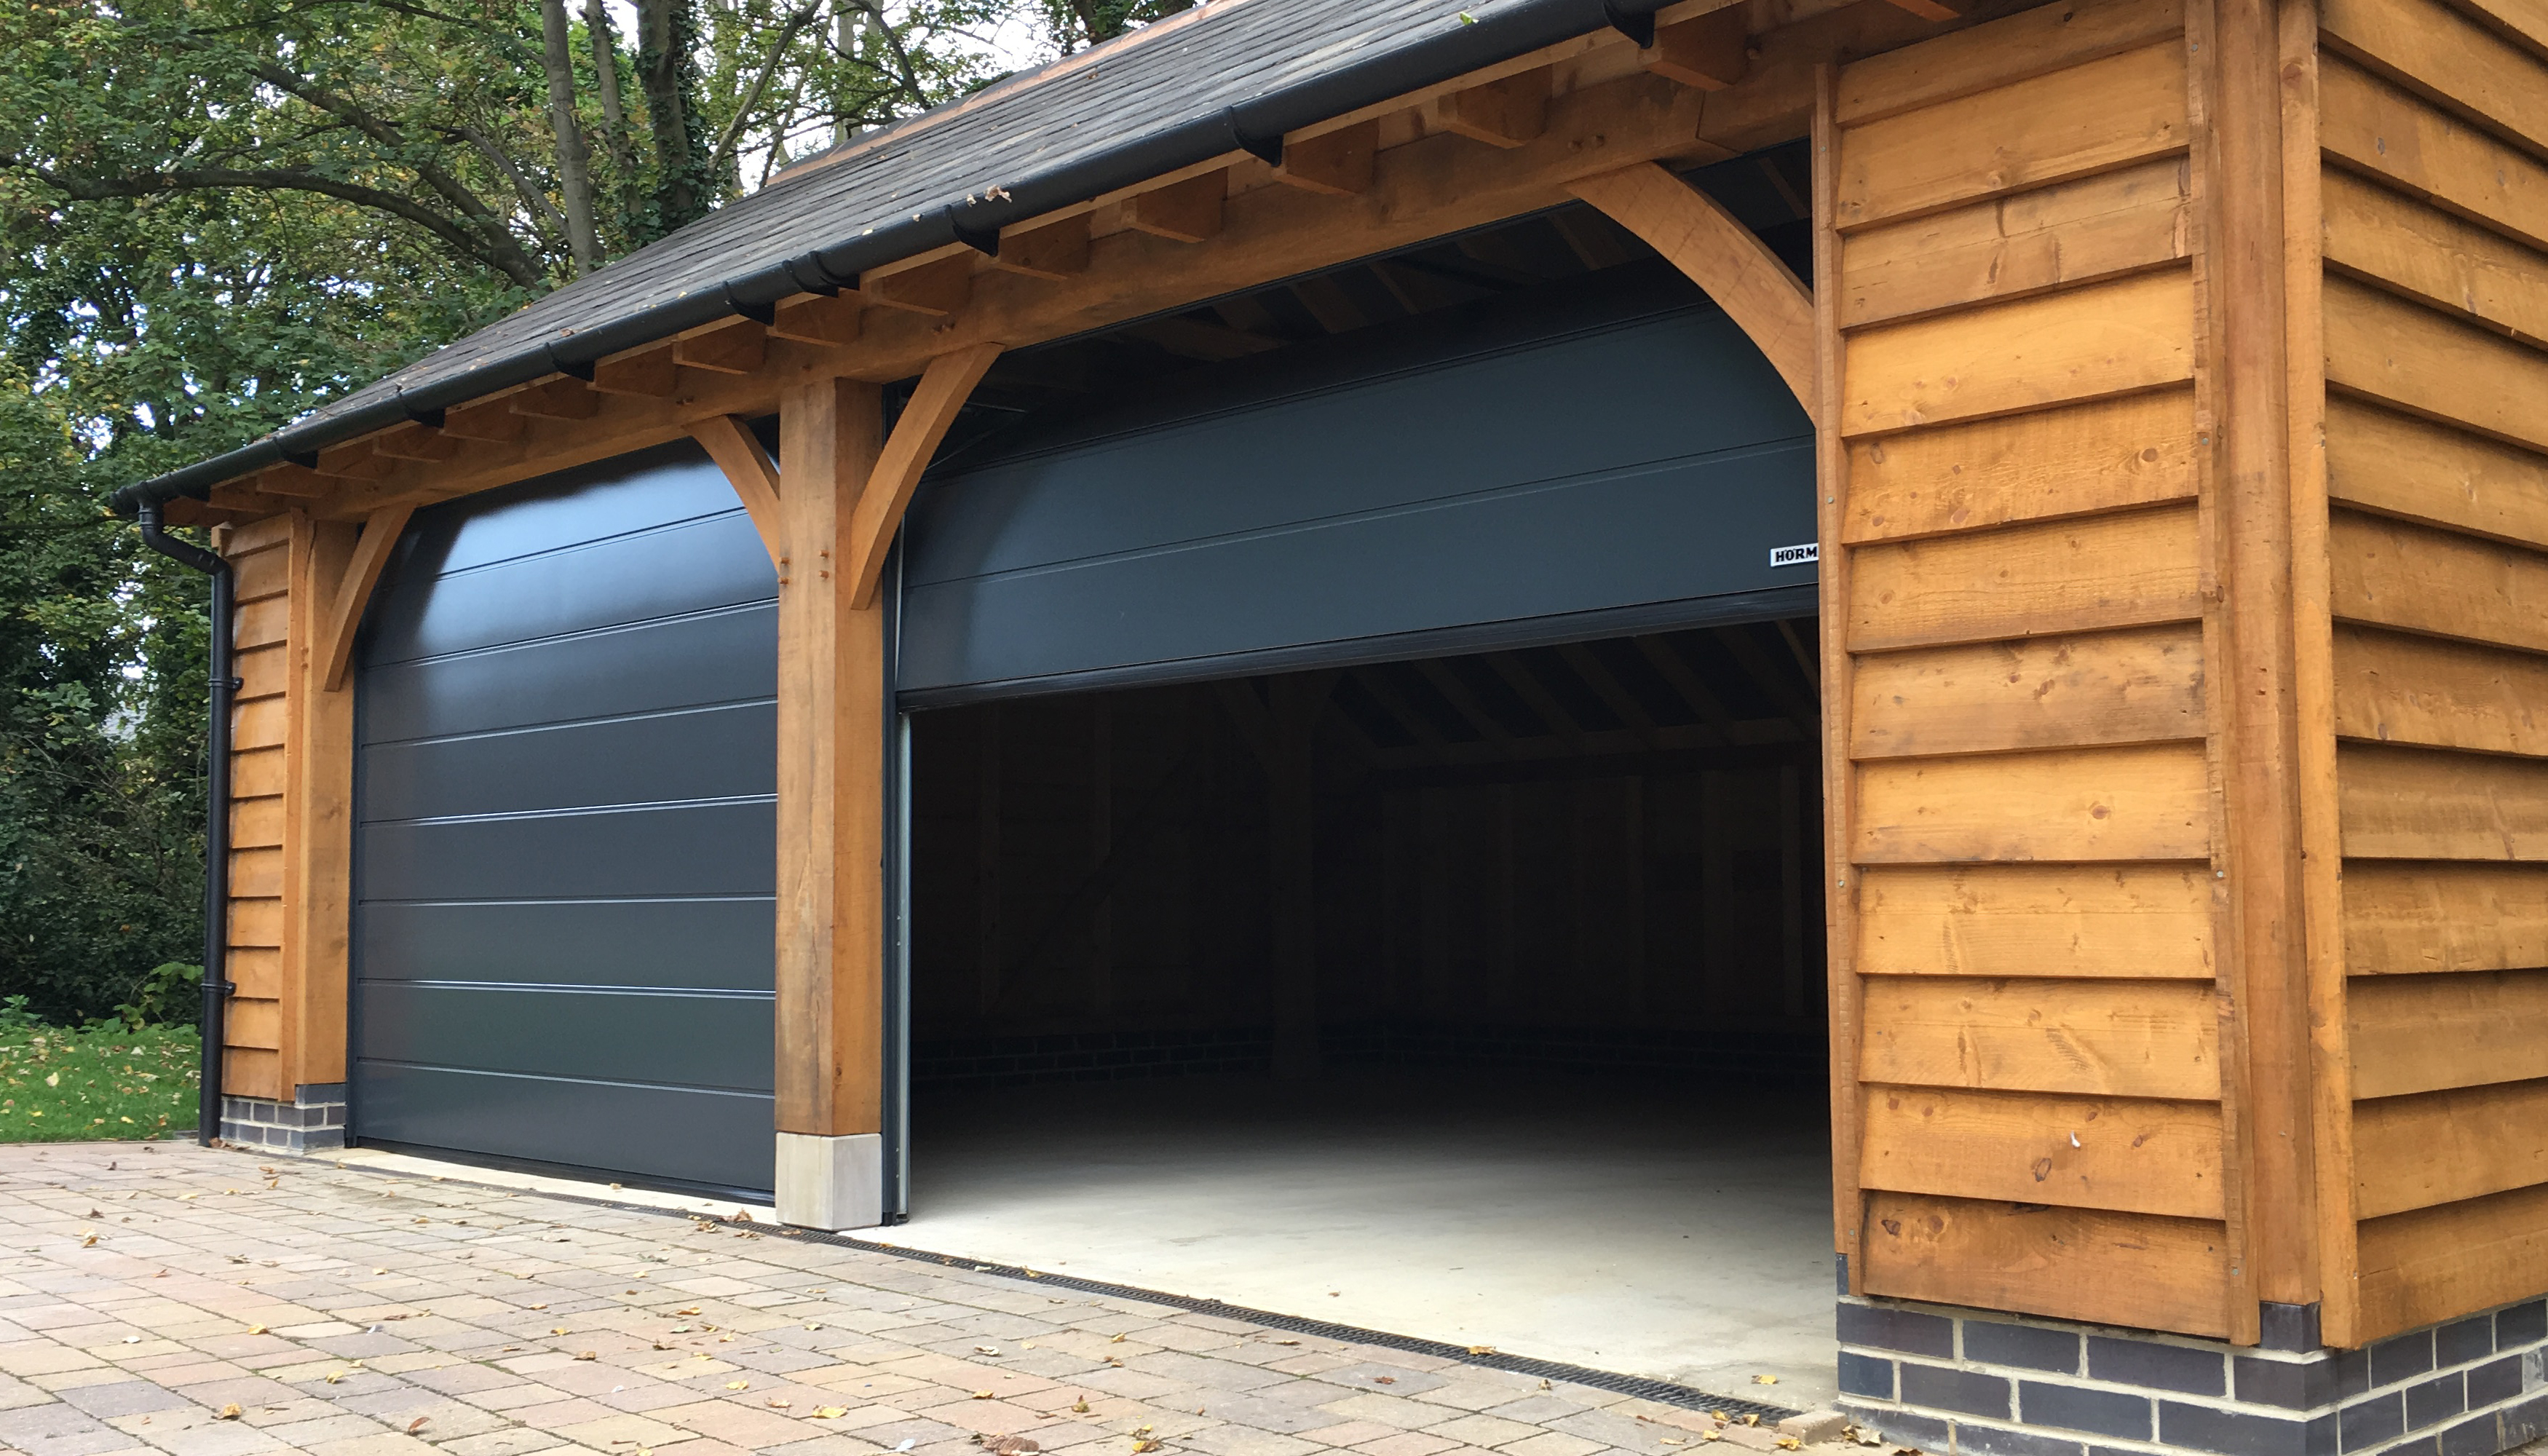 Sectional Garage Doors Purpose Made Insulated And Non Insulated Security Sectional Garage Doors Garage Doors Online Uk